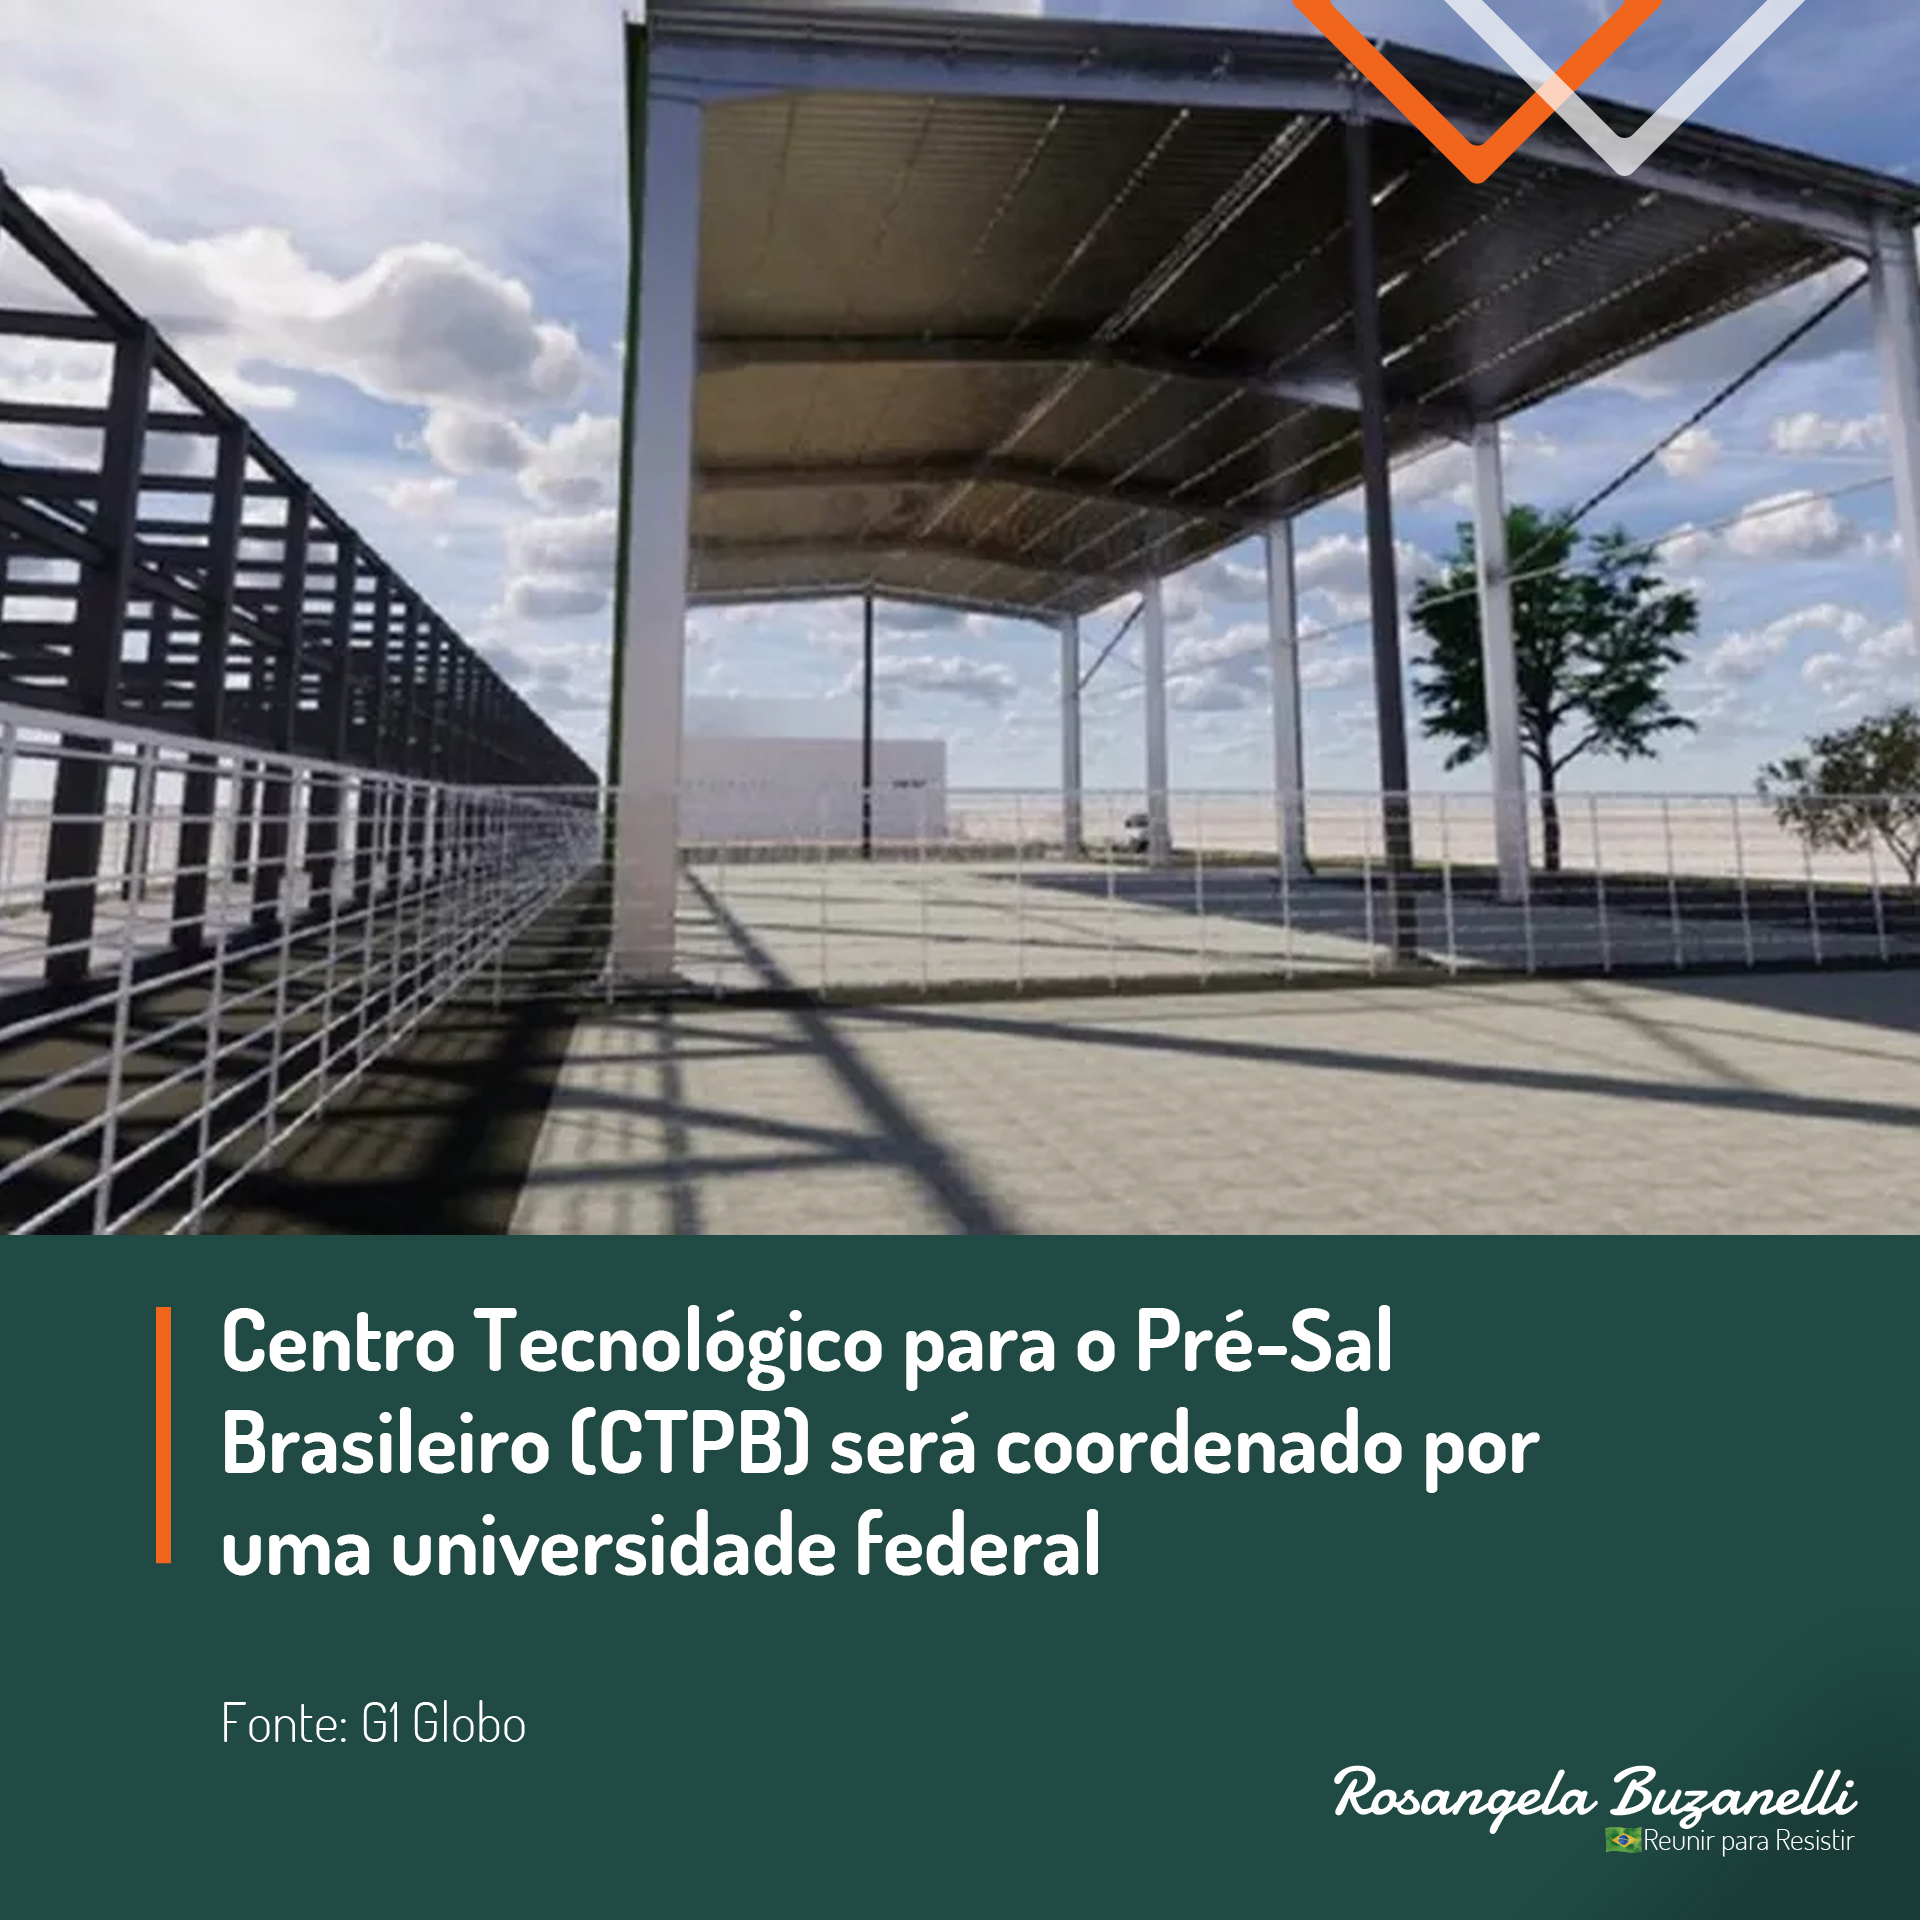 Centro Tecnológico para o Pré-Sal Brasileiro (CTPB) será coordenado por uma universidade federal